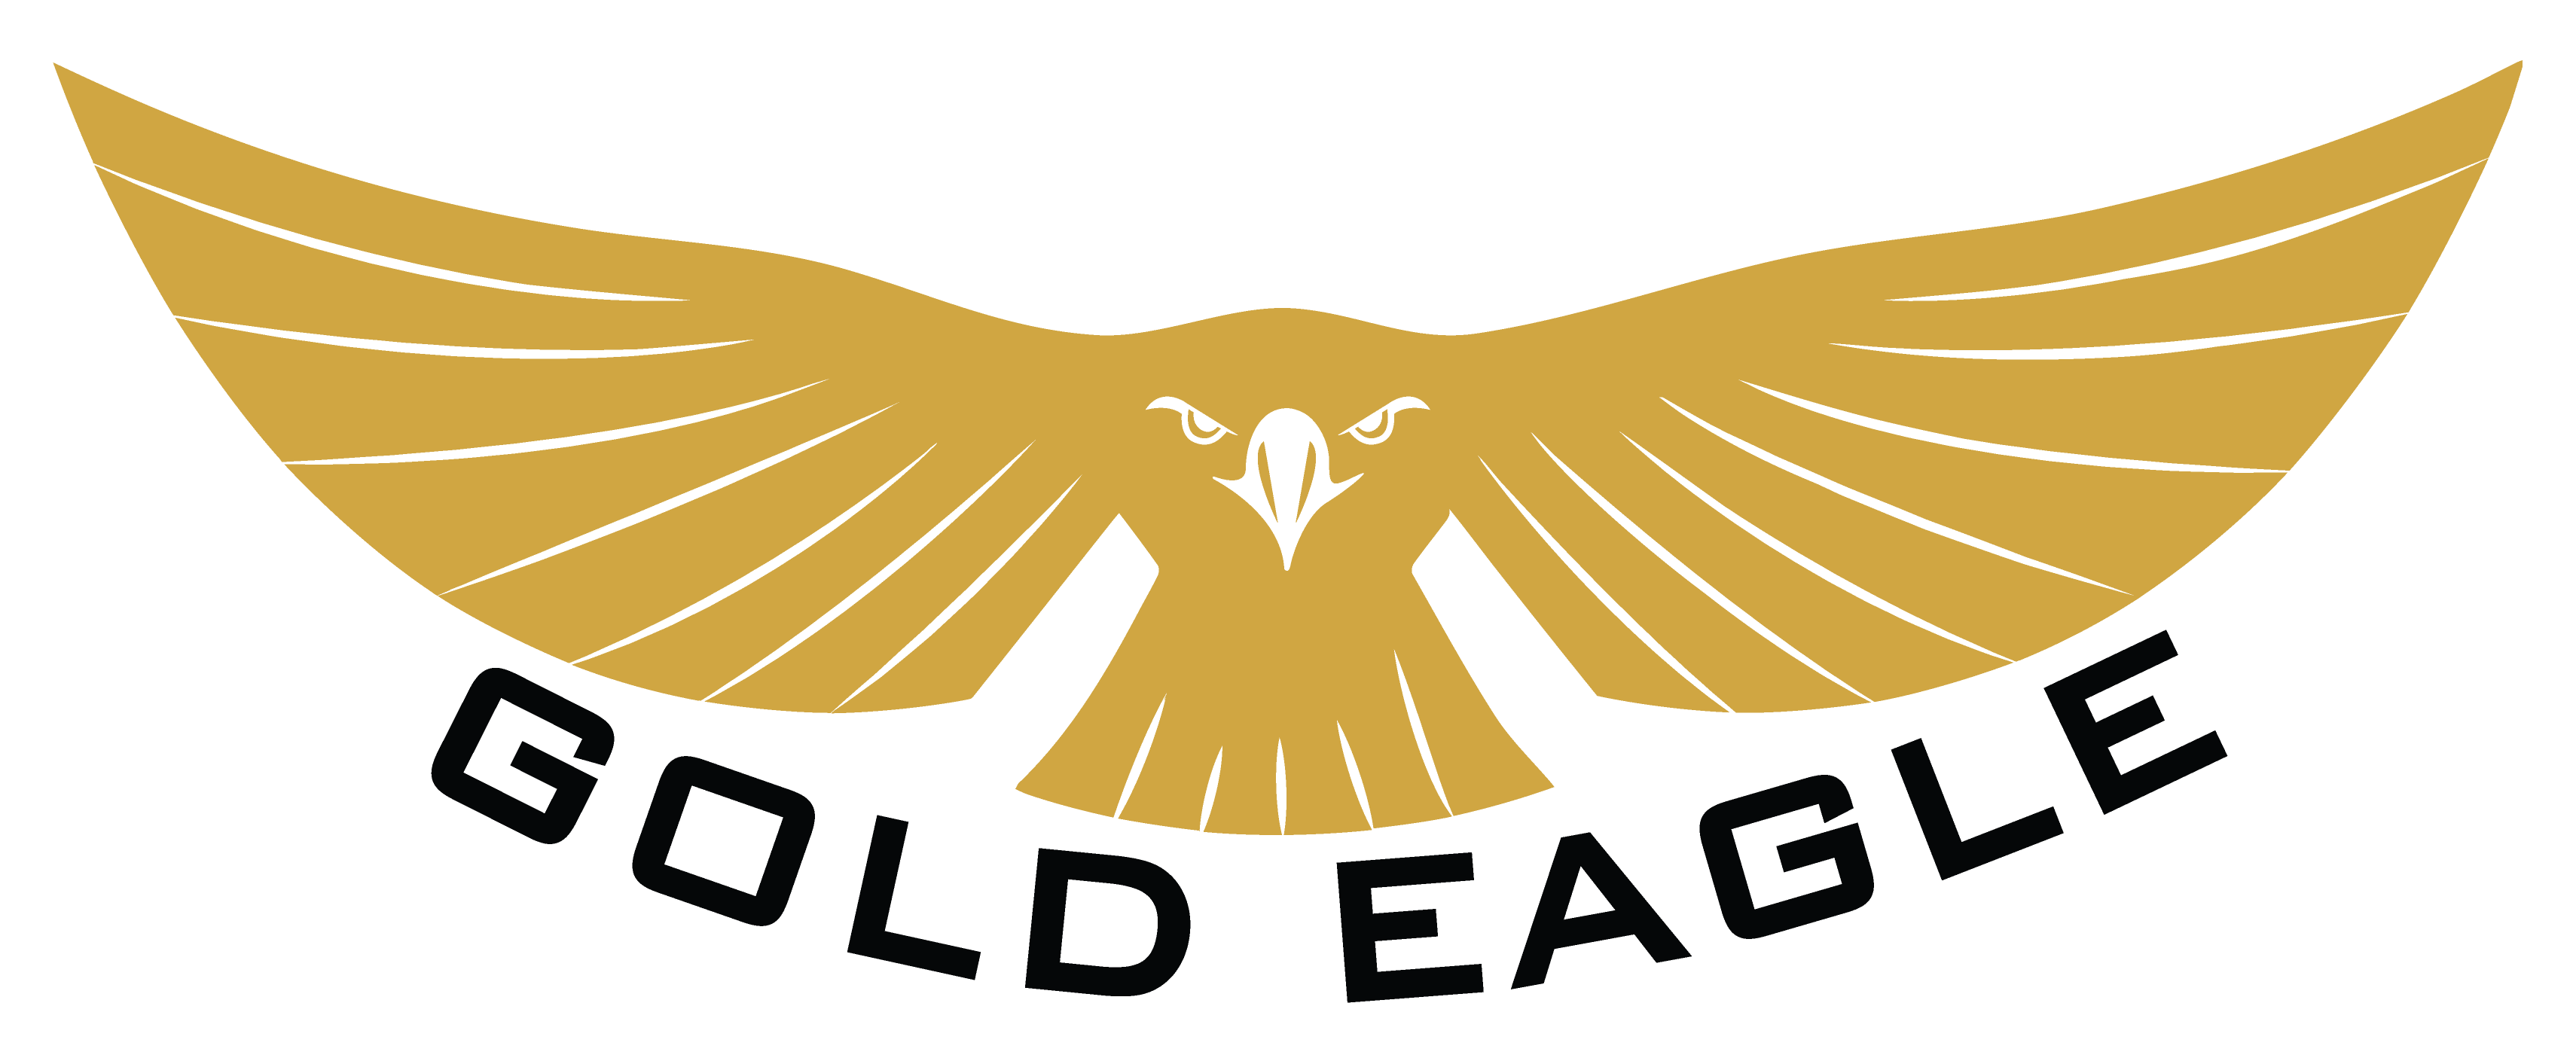 Golden Eagle Logos